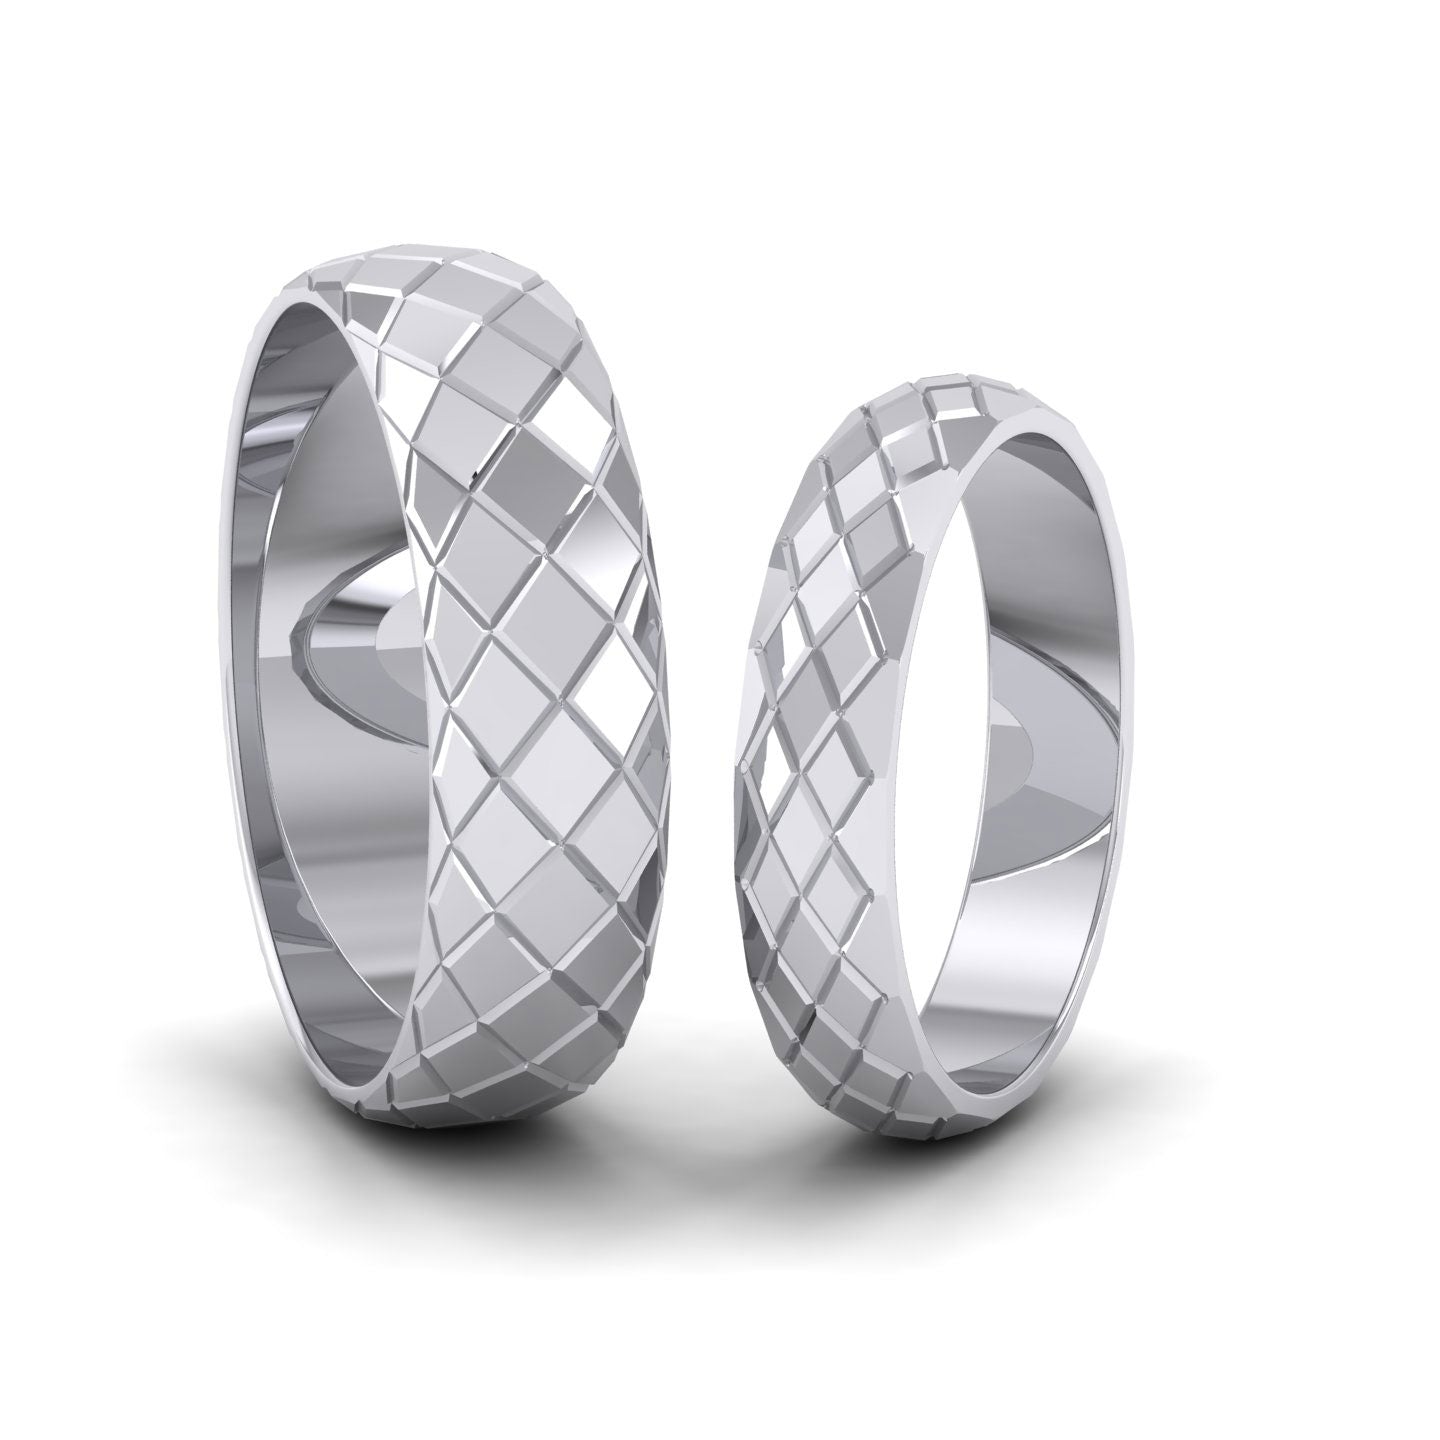 Facet And Line Harlequin Design 950 Palladium 4mm Wedding Ring